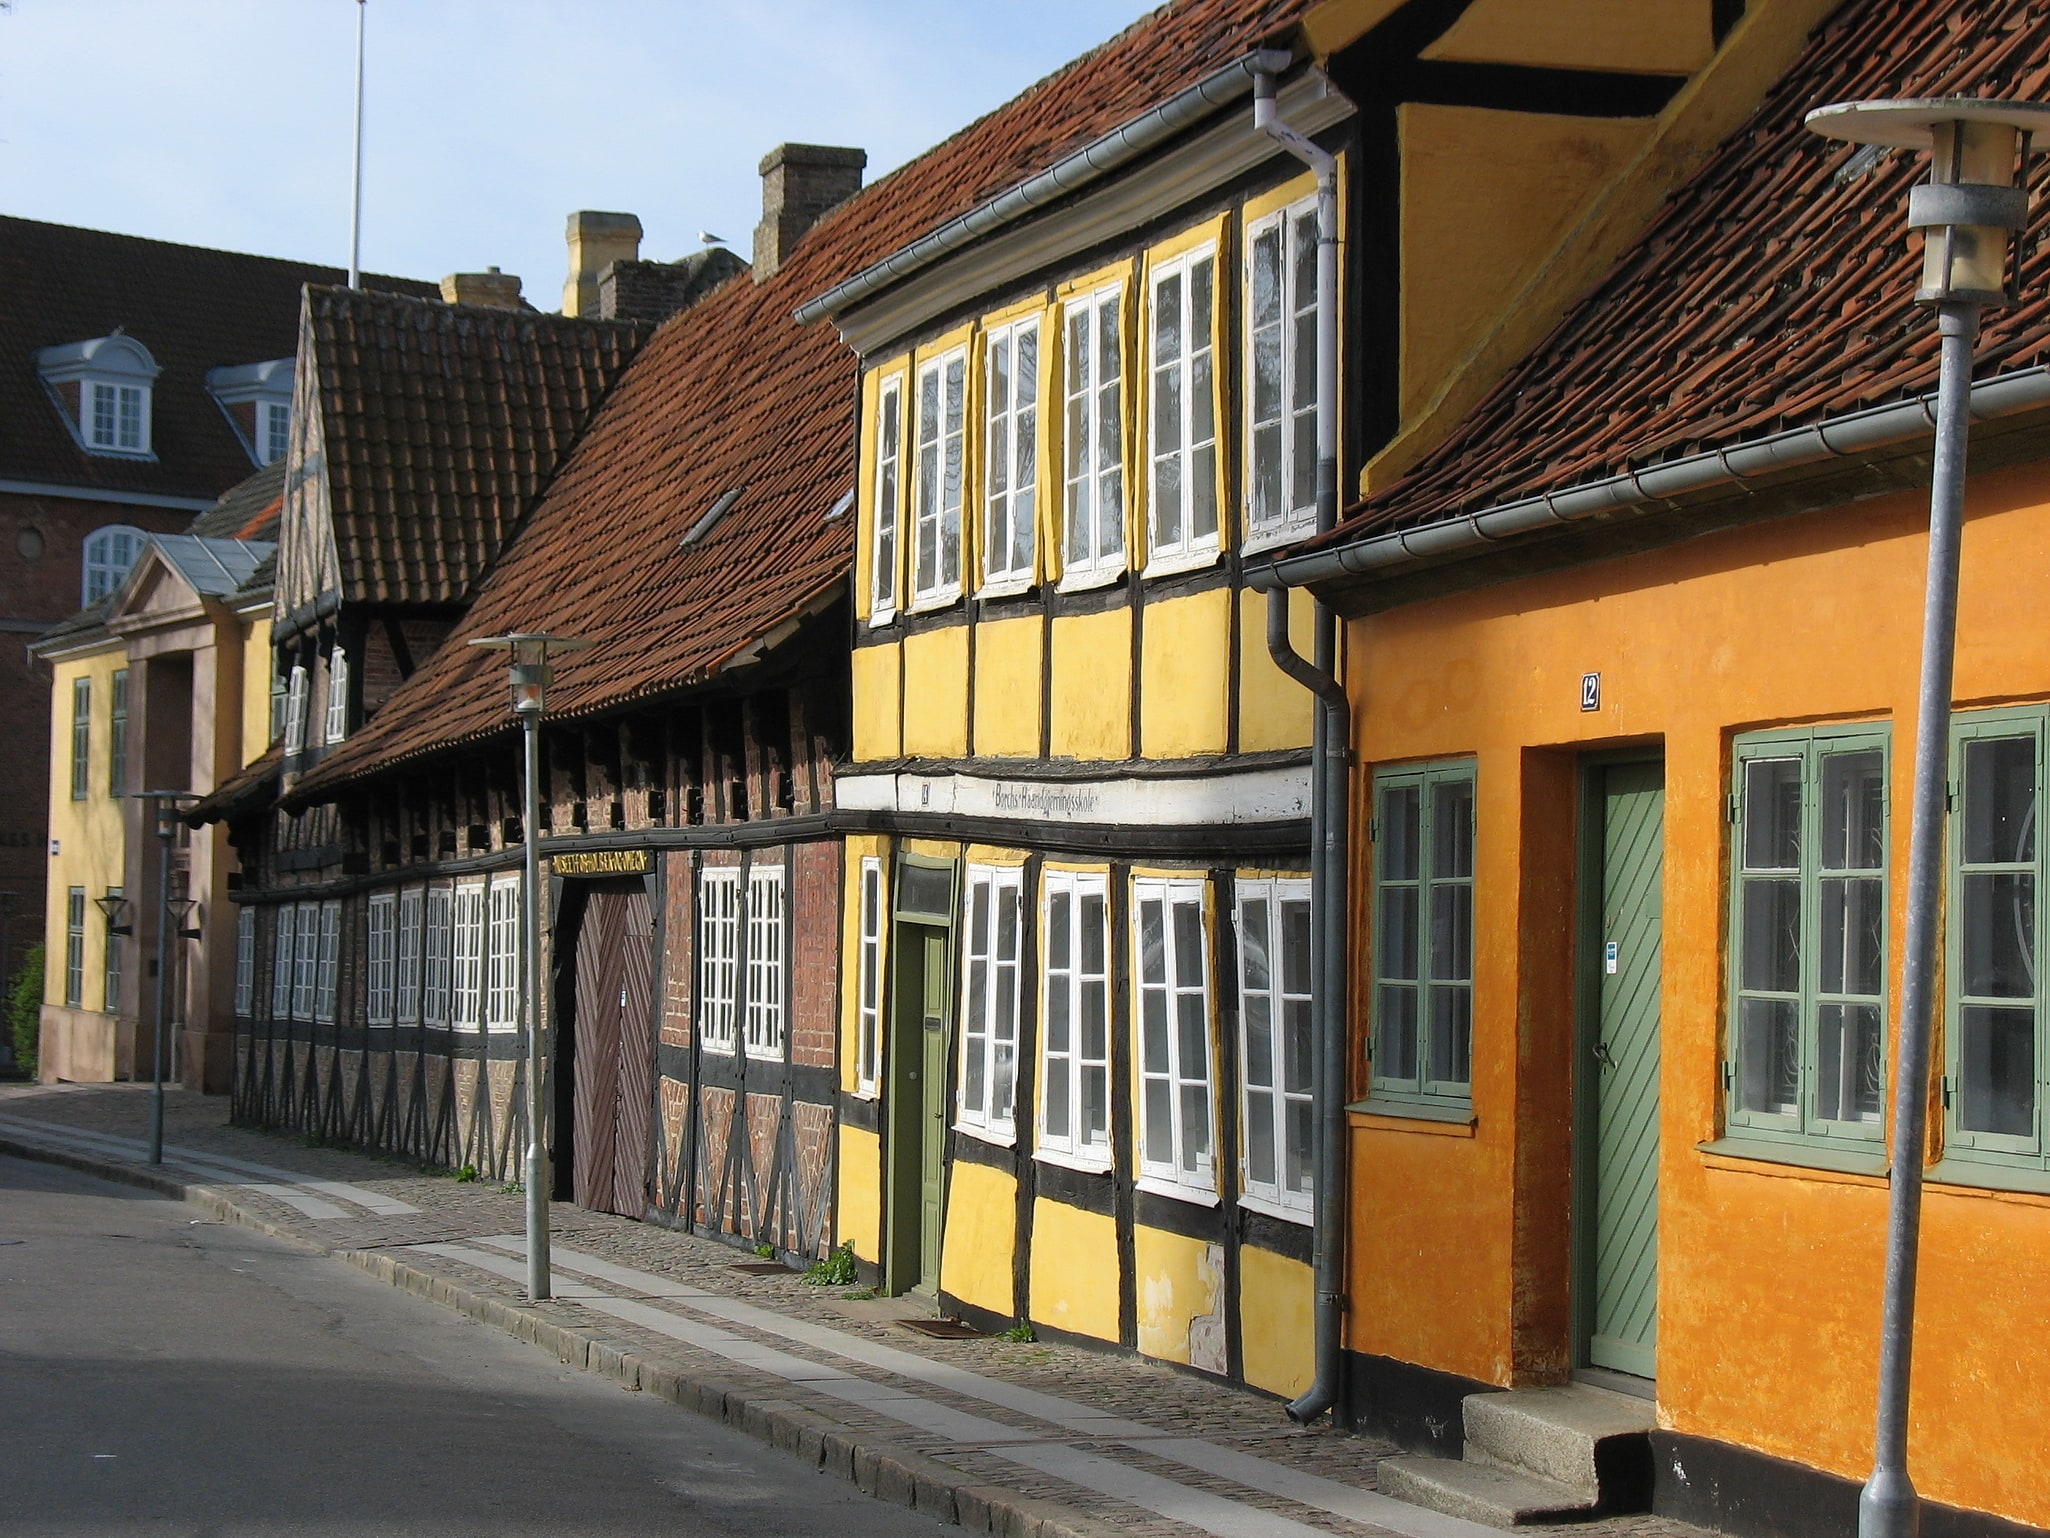 Holbæk, Dänemark